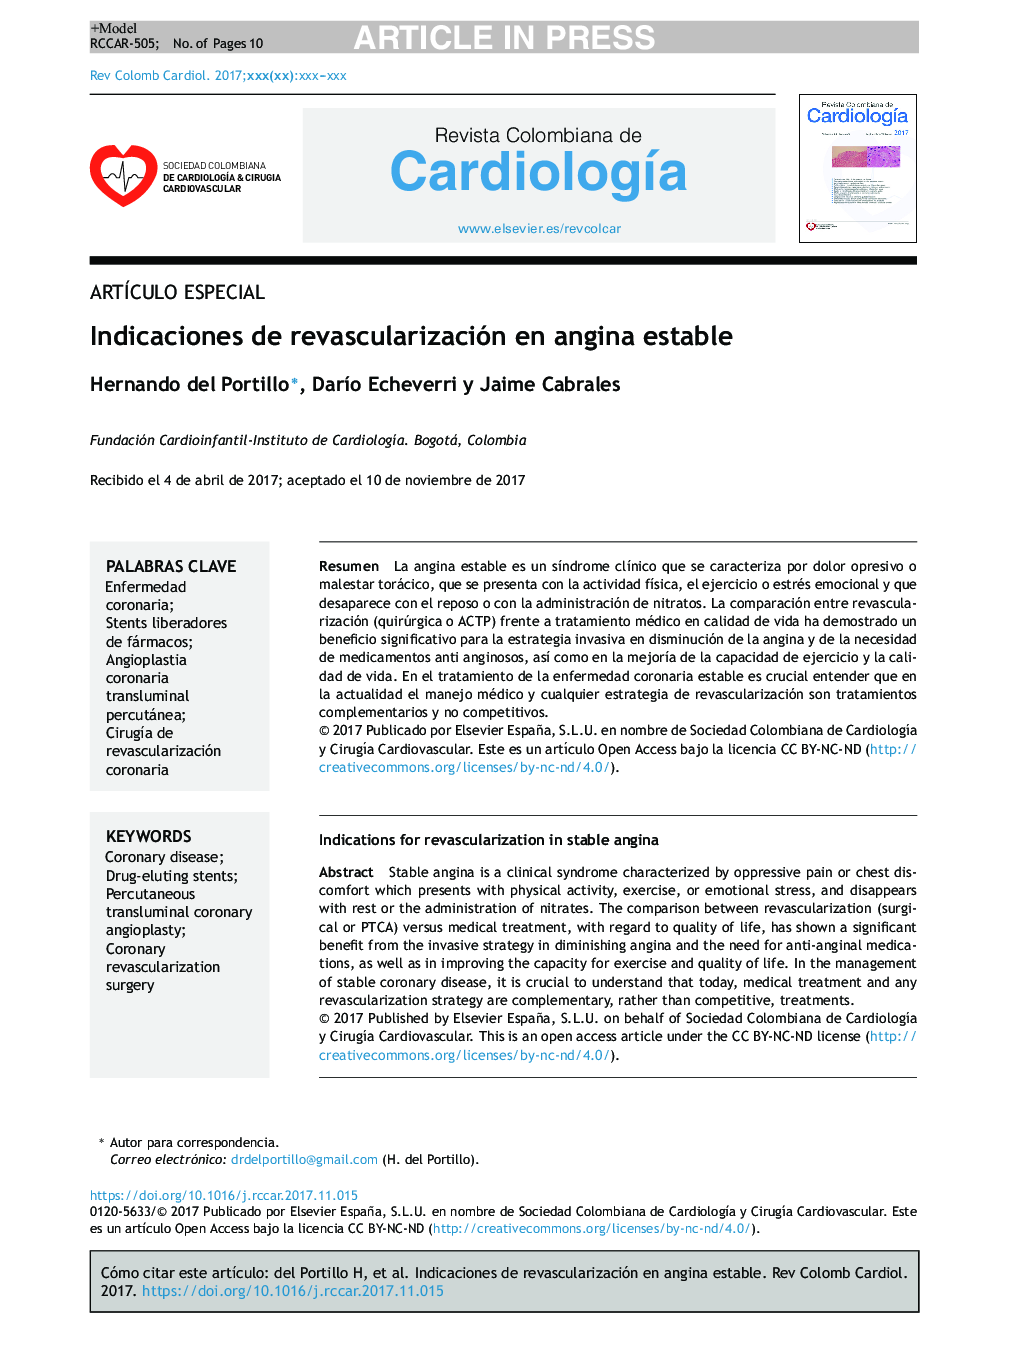 Indicaciones de revascularización en angina estable